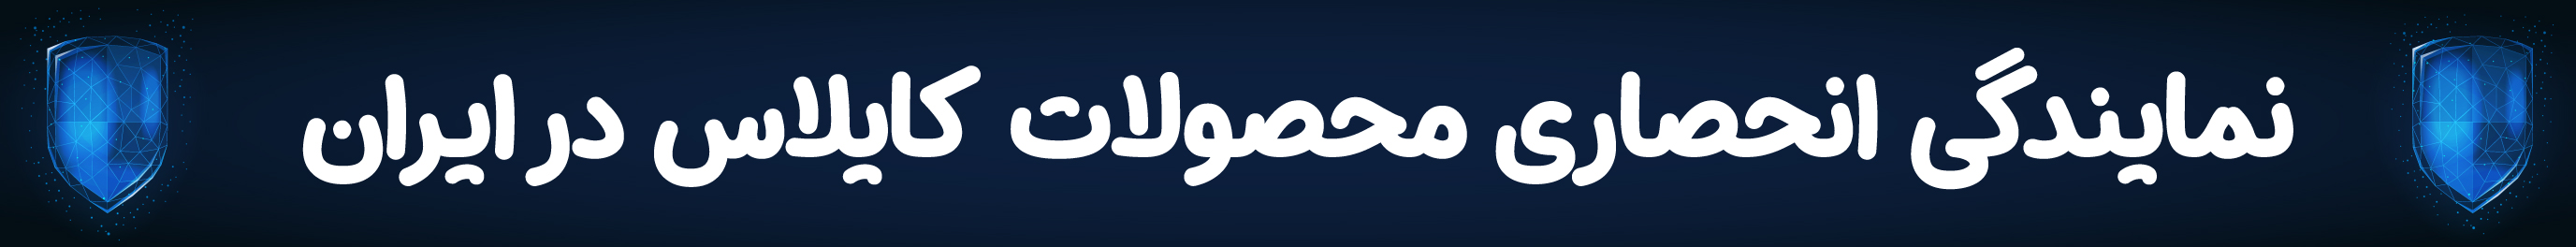 شرکت هوراز نمایندگی محصولات کایلاس در ایران